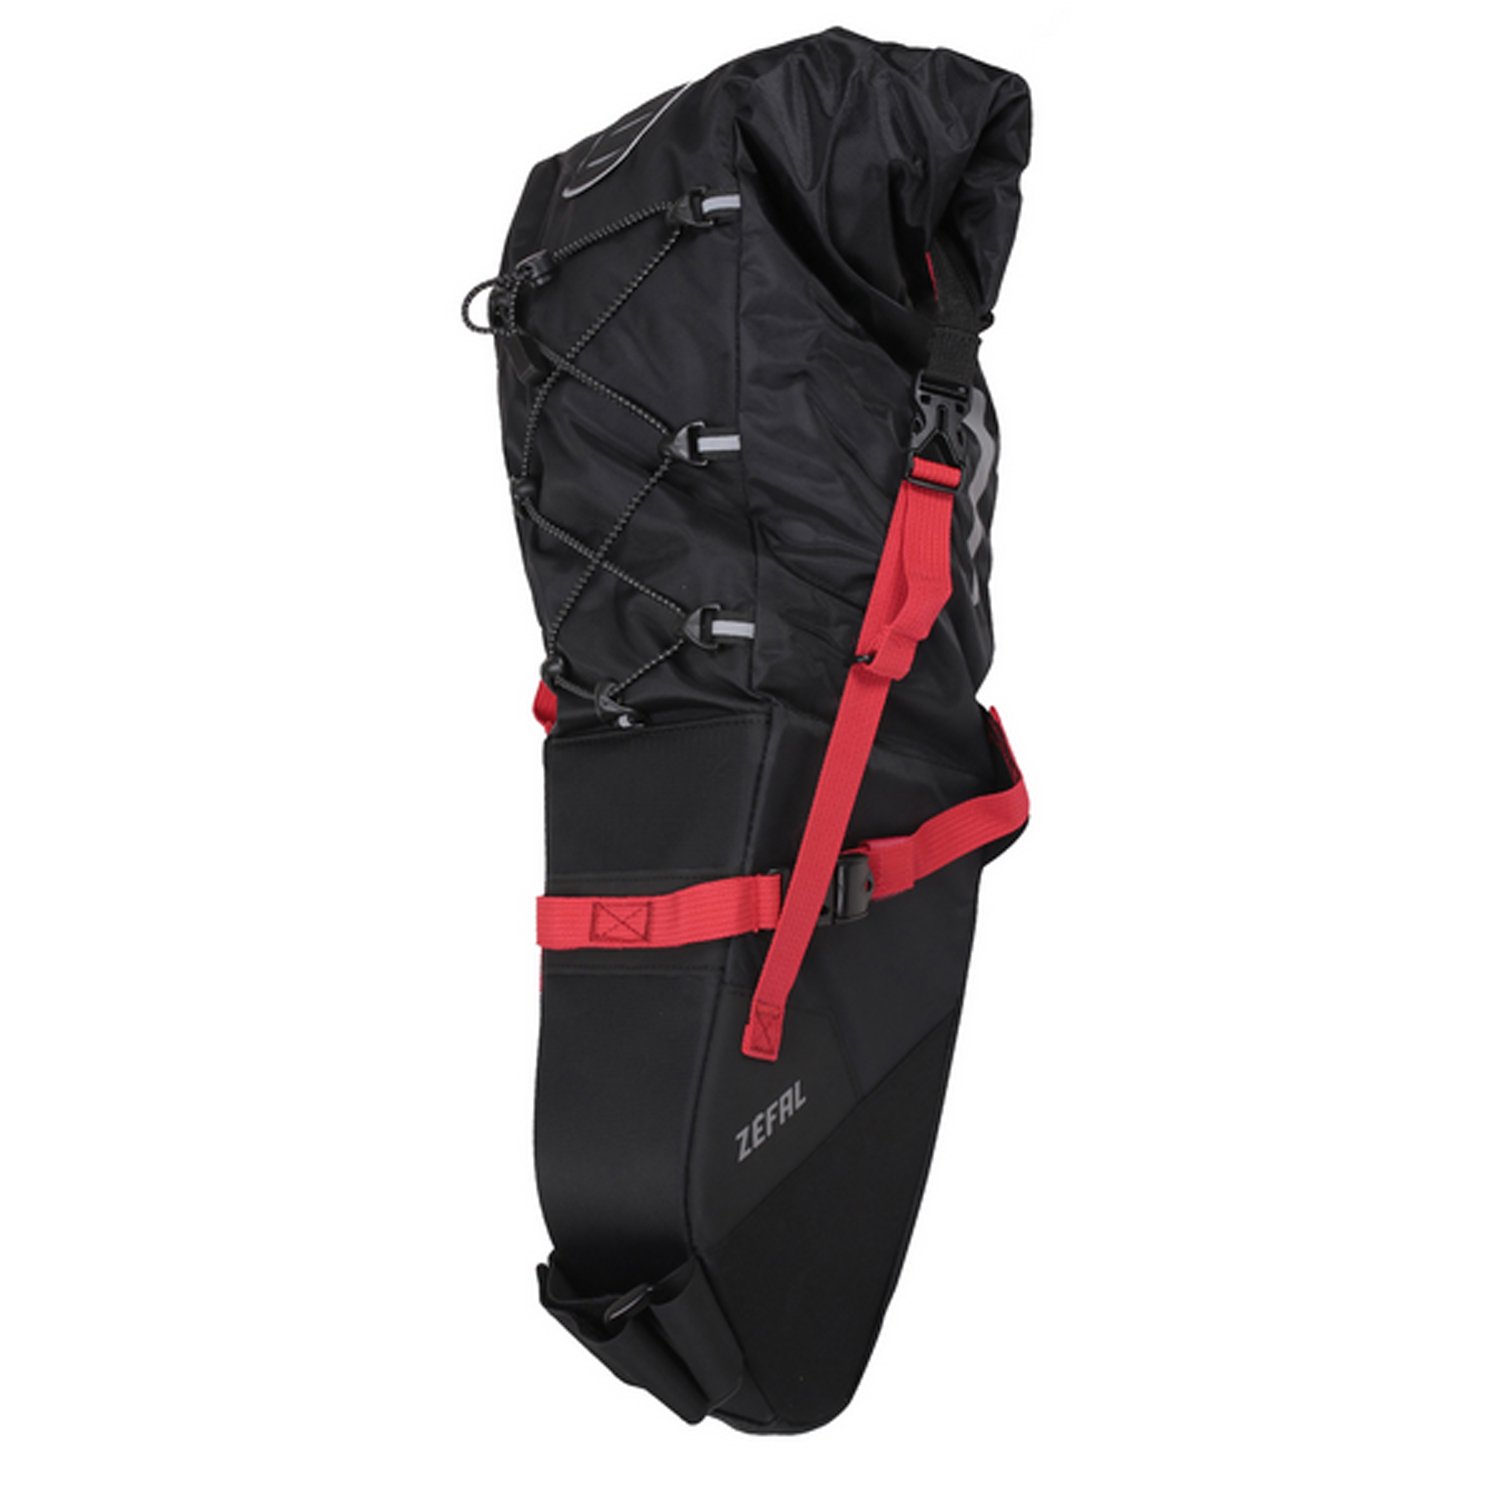 Сумка велосипедная Zefal Z Adventure R17 Saddle Bag, подседельная, объем от 8 до 17L, красный/черный, 2023, 7002 mutsy сумка для коляски nio adventure